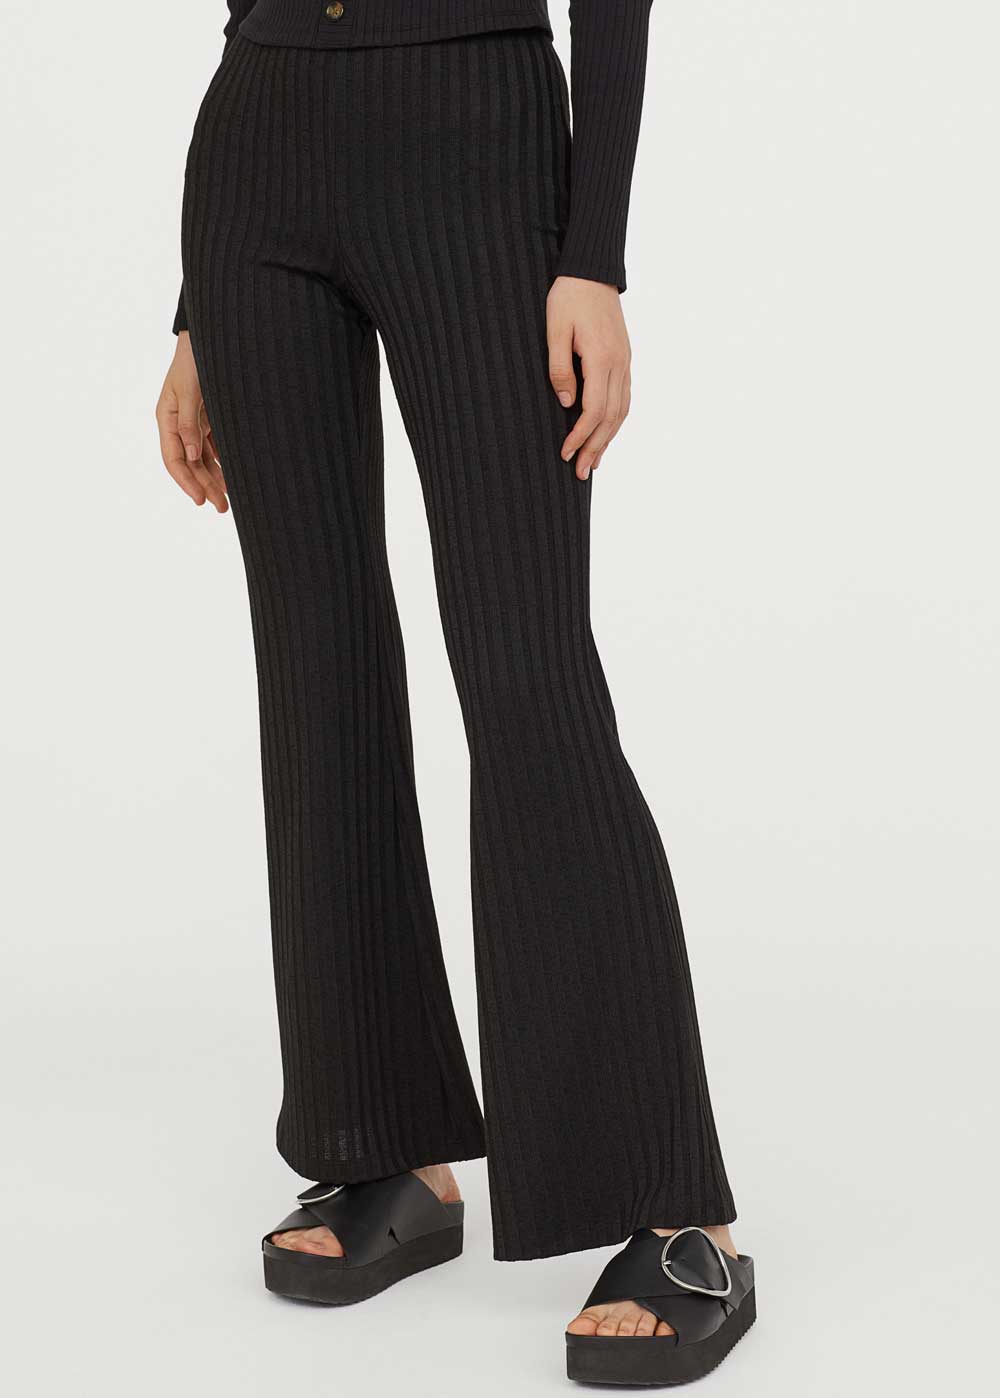 Pantaloni H&M 2020